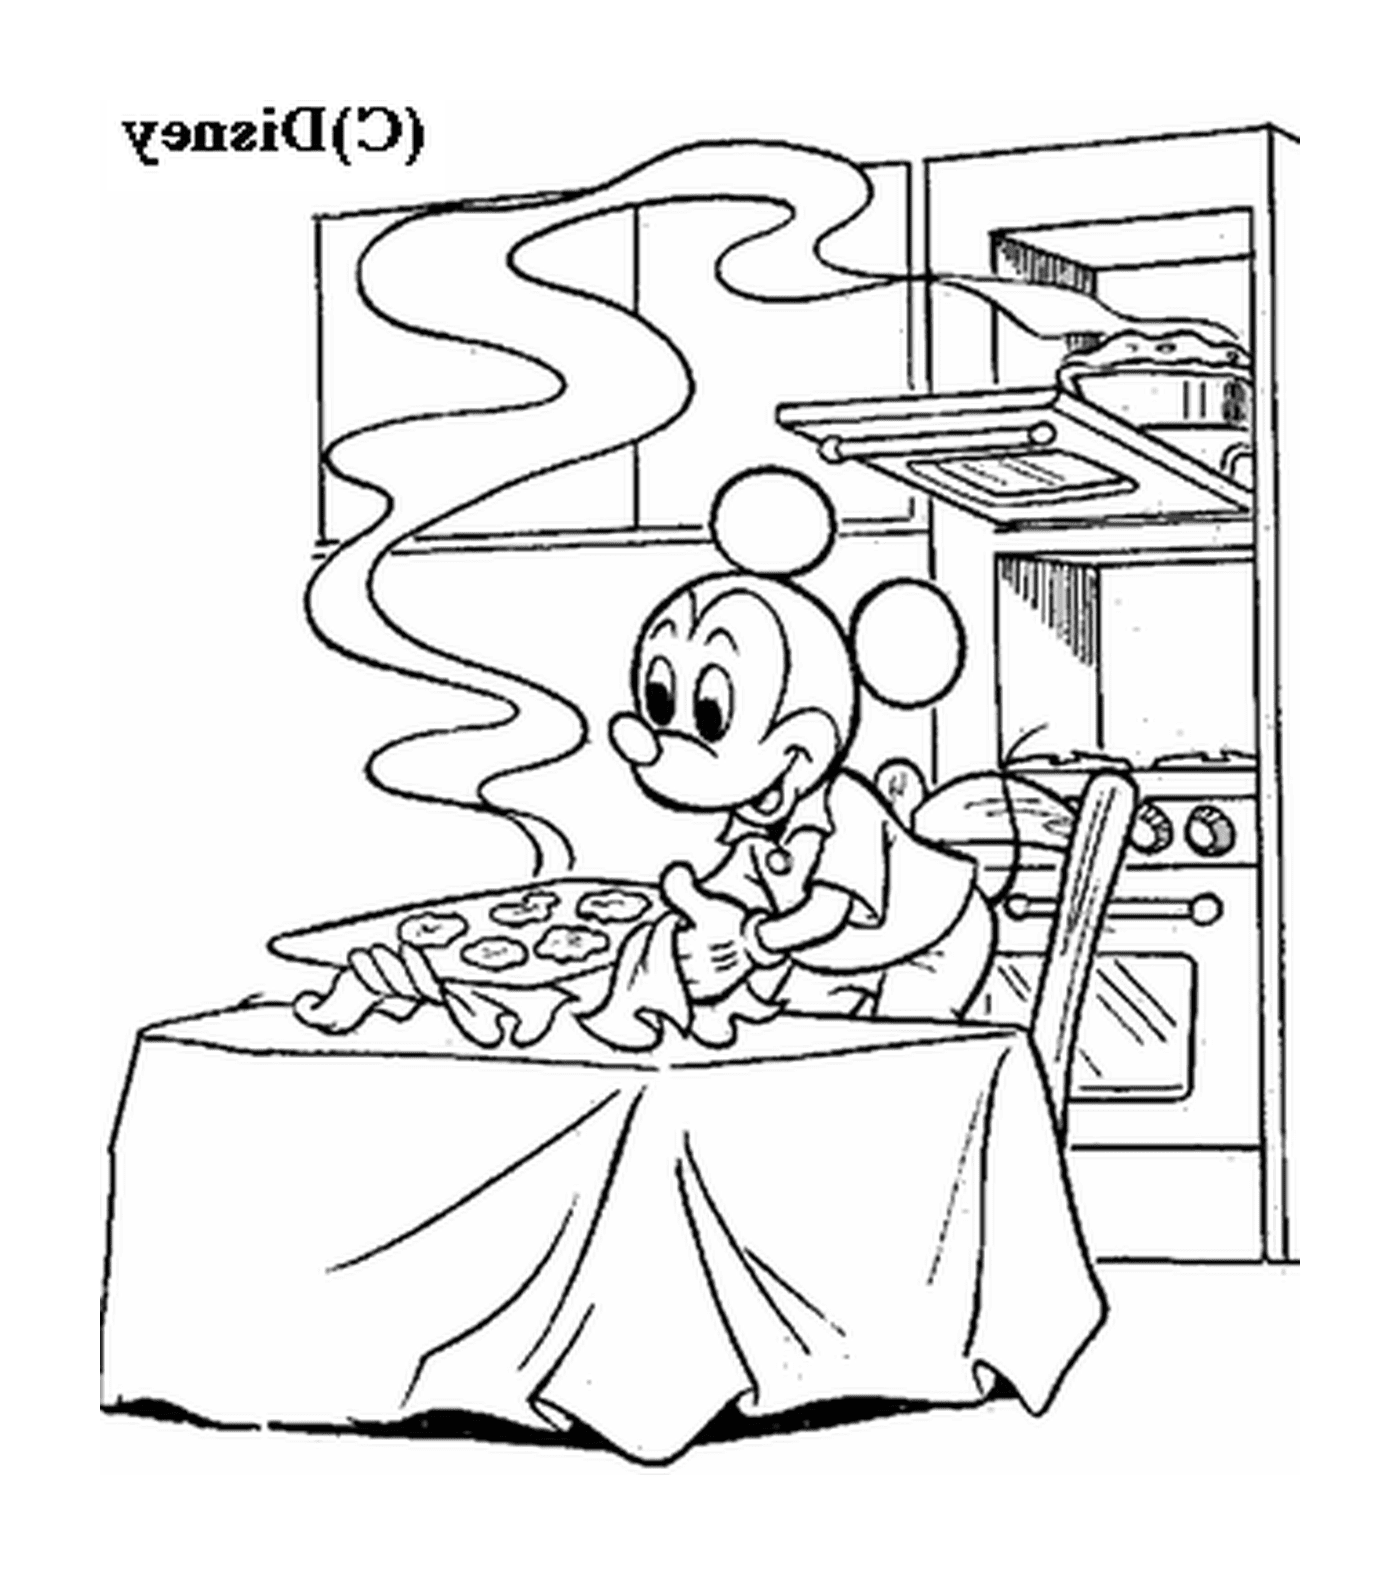  Mickey faz biscoitos: um rato sentado em uma mesa na frente de um fogão 